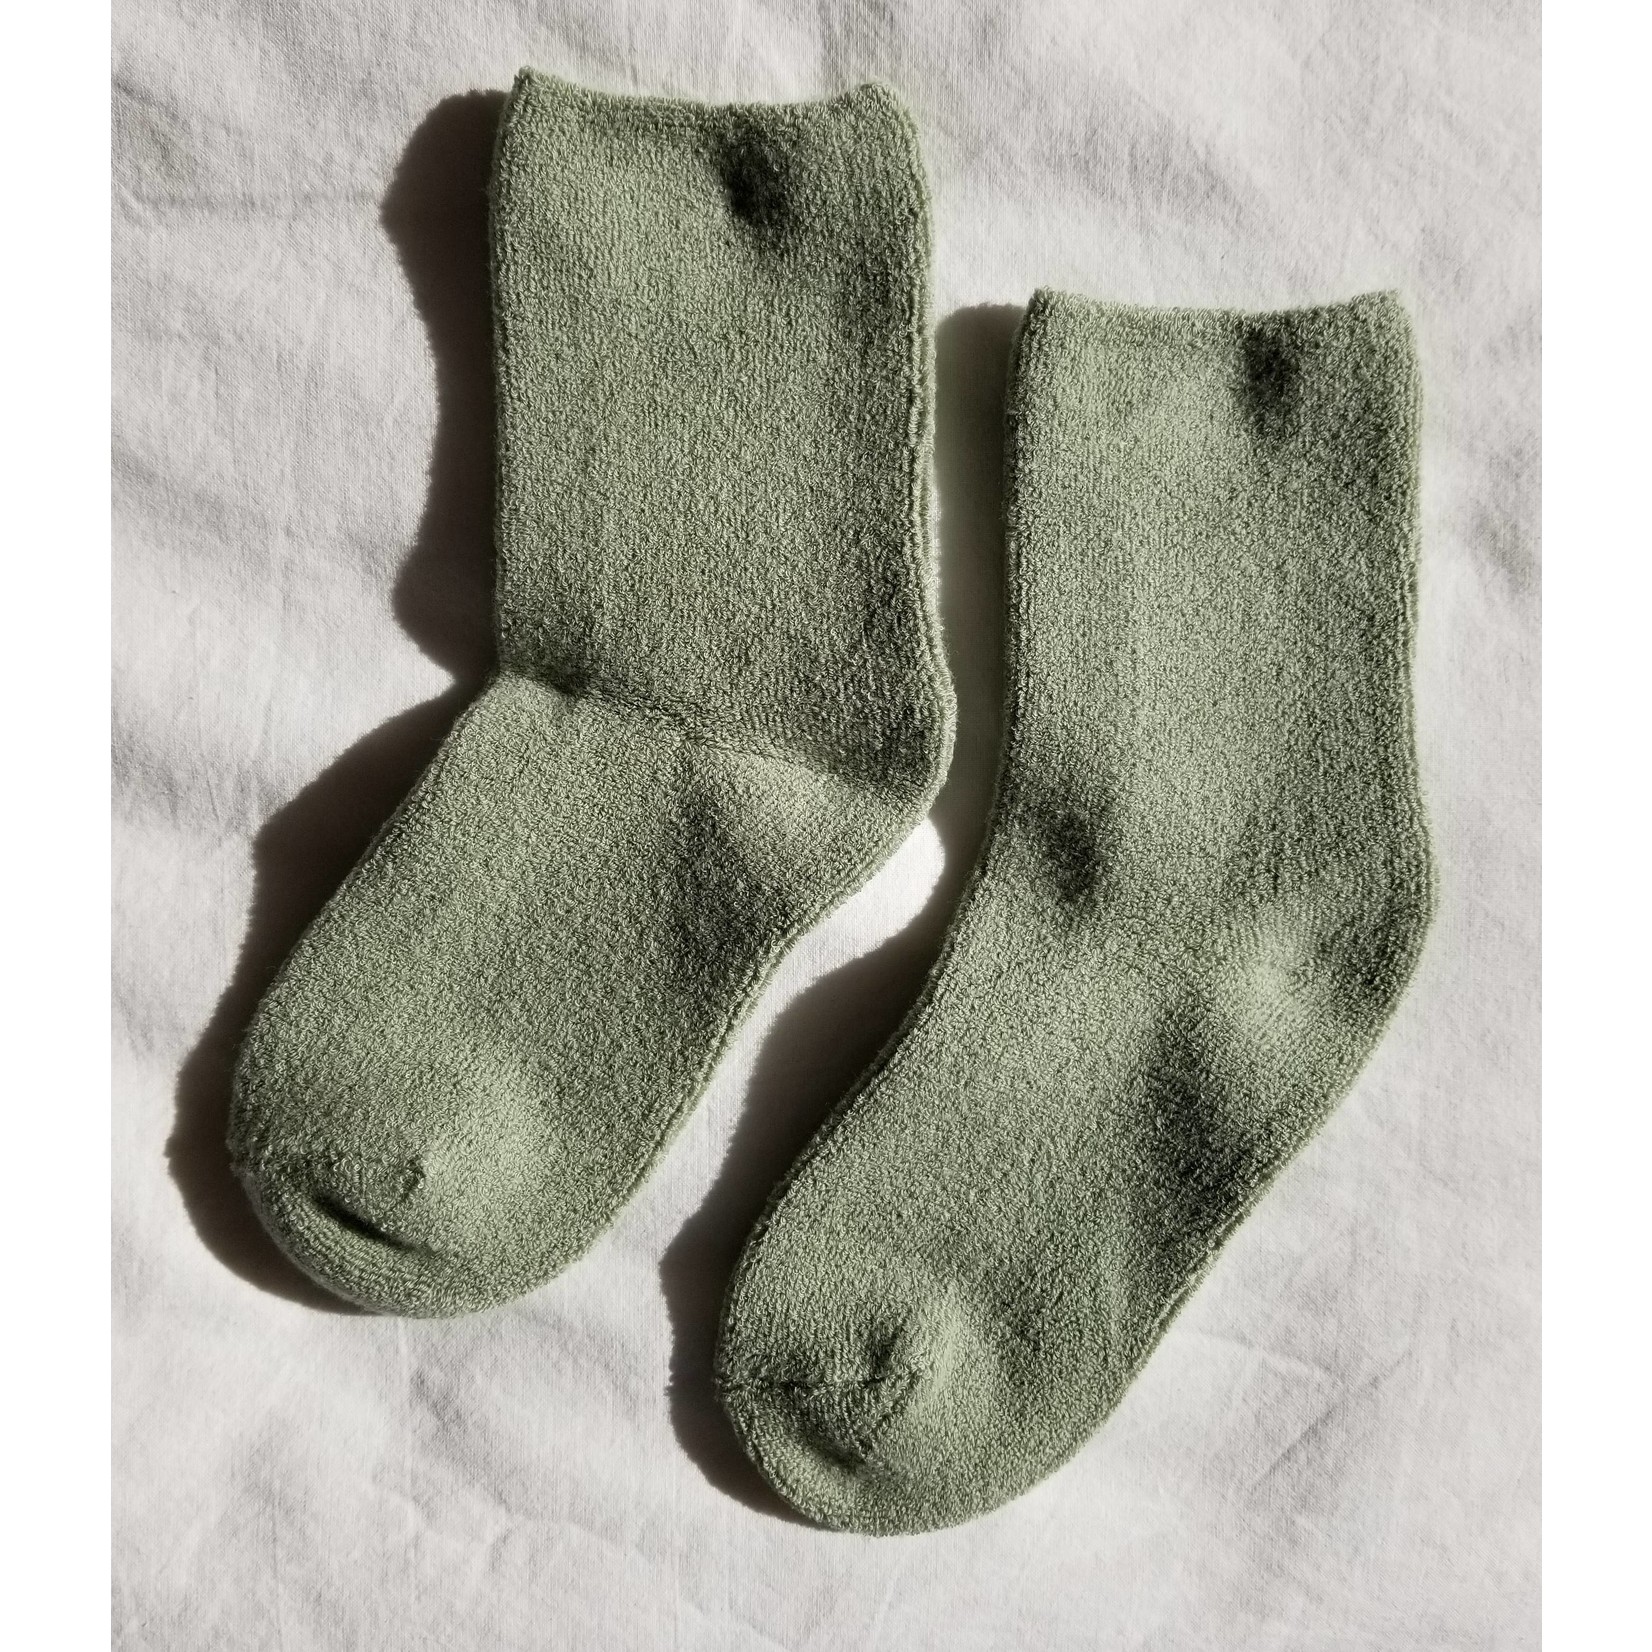 Le Bon Shoppe Cloud Socks Matcha